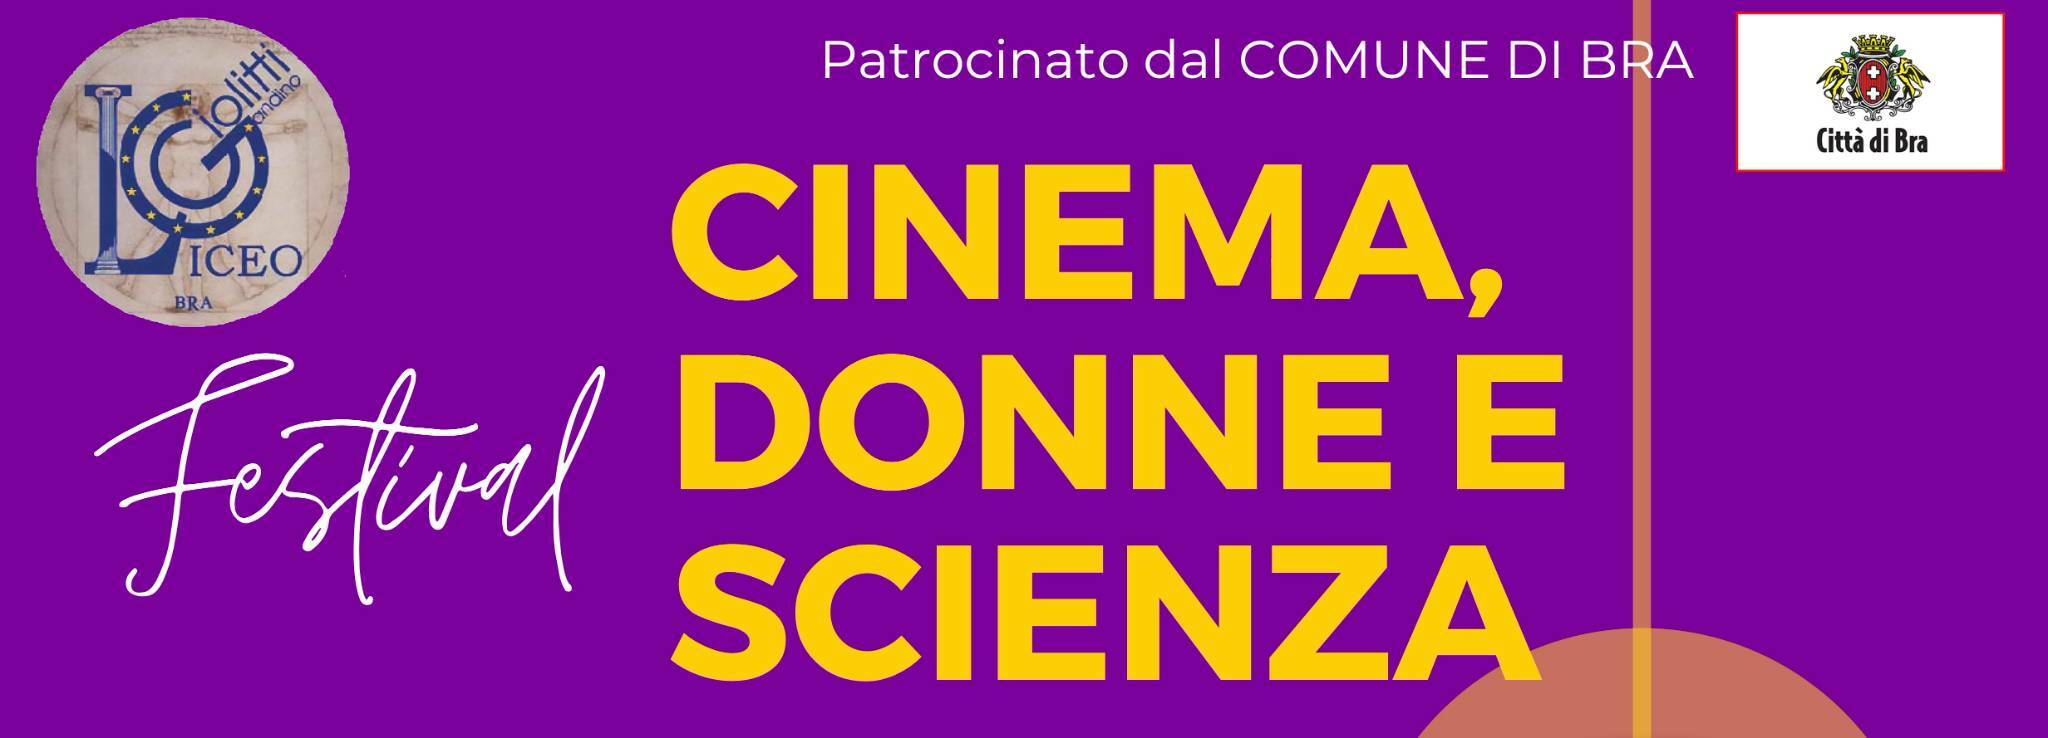 Festival del Cinema a Bra per la conclusione del progetto “Cinema, Donne e Scienza”